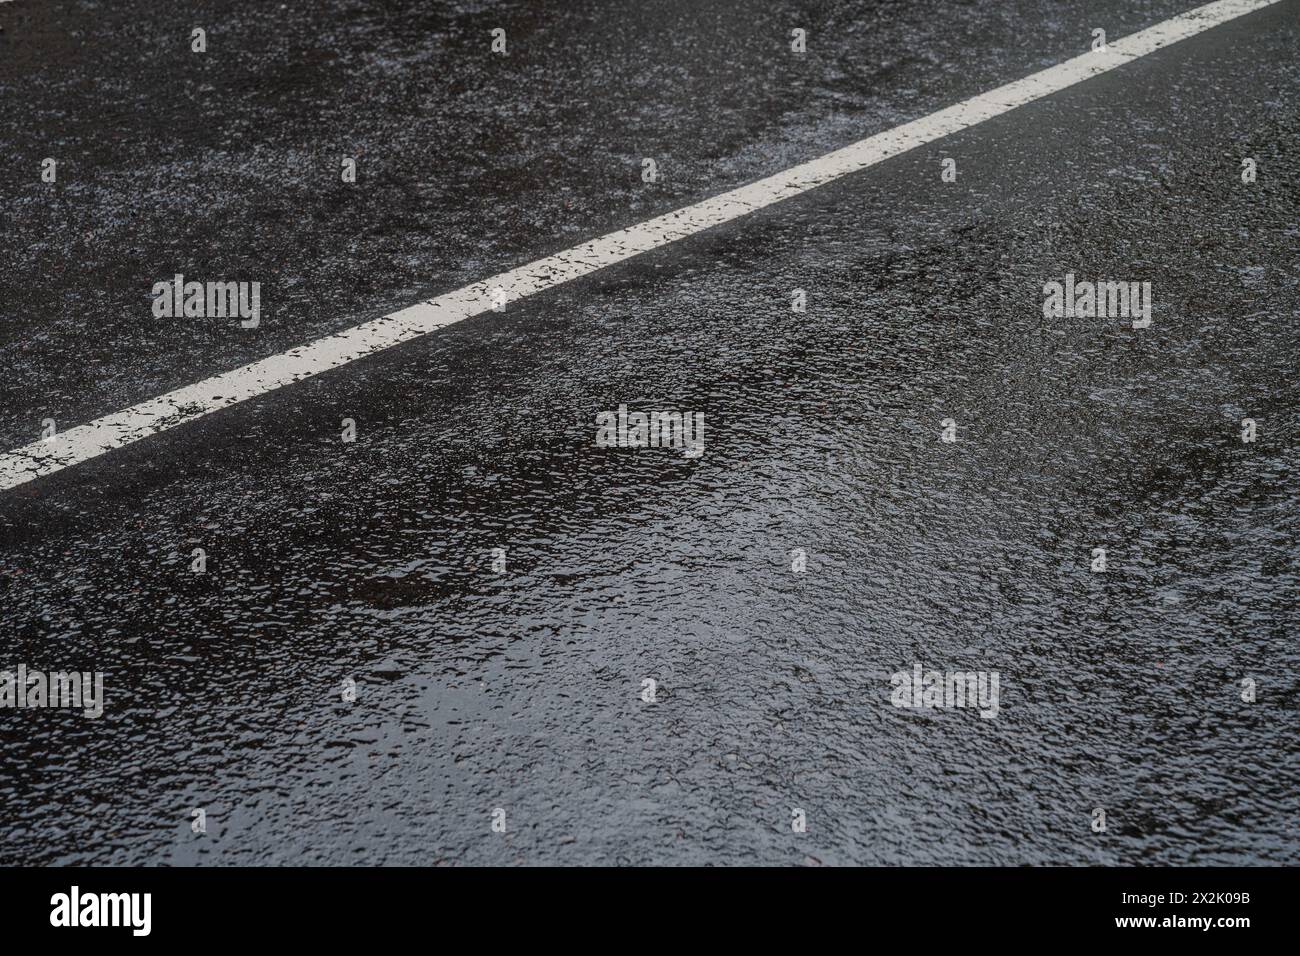 Primo piano di una strada asfaltata bagnata con una linea bianca chiara che riflette la luce dopo una pioggia fresca. Questa immagine cattura la texture e la lucentezza del Foto Stock